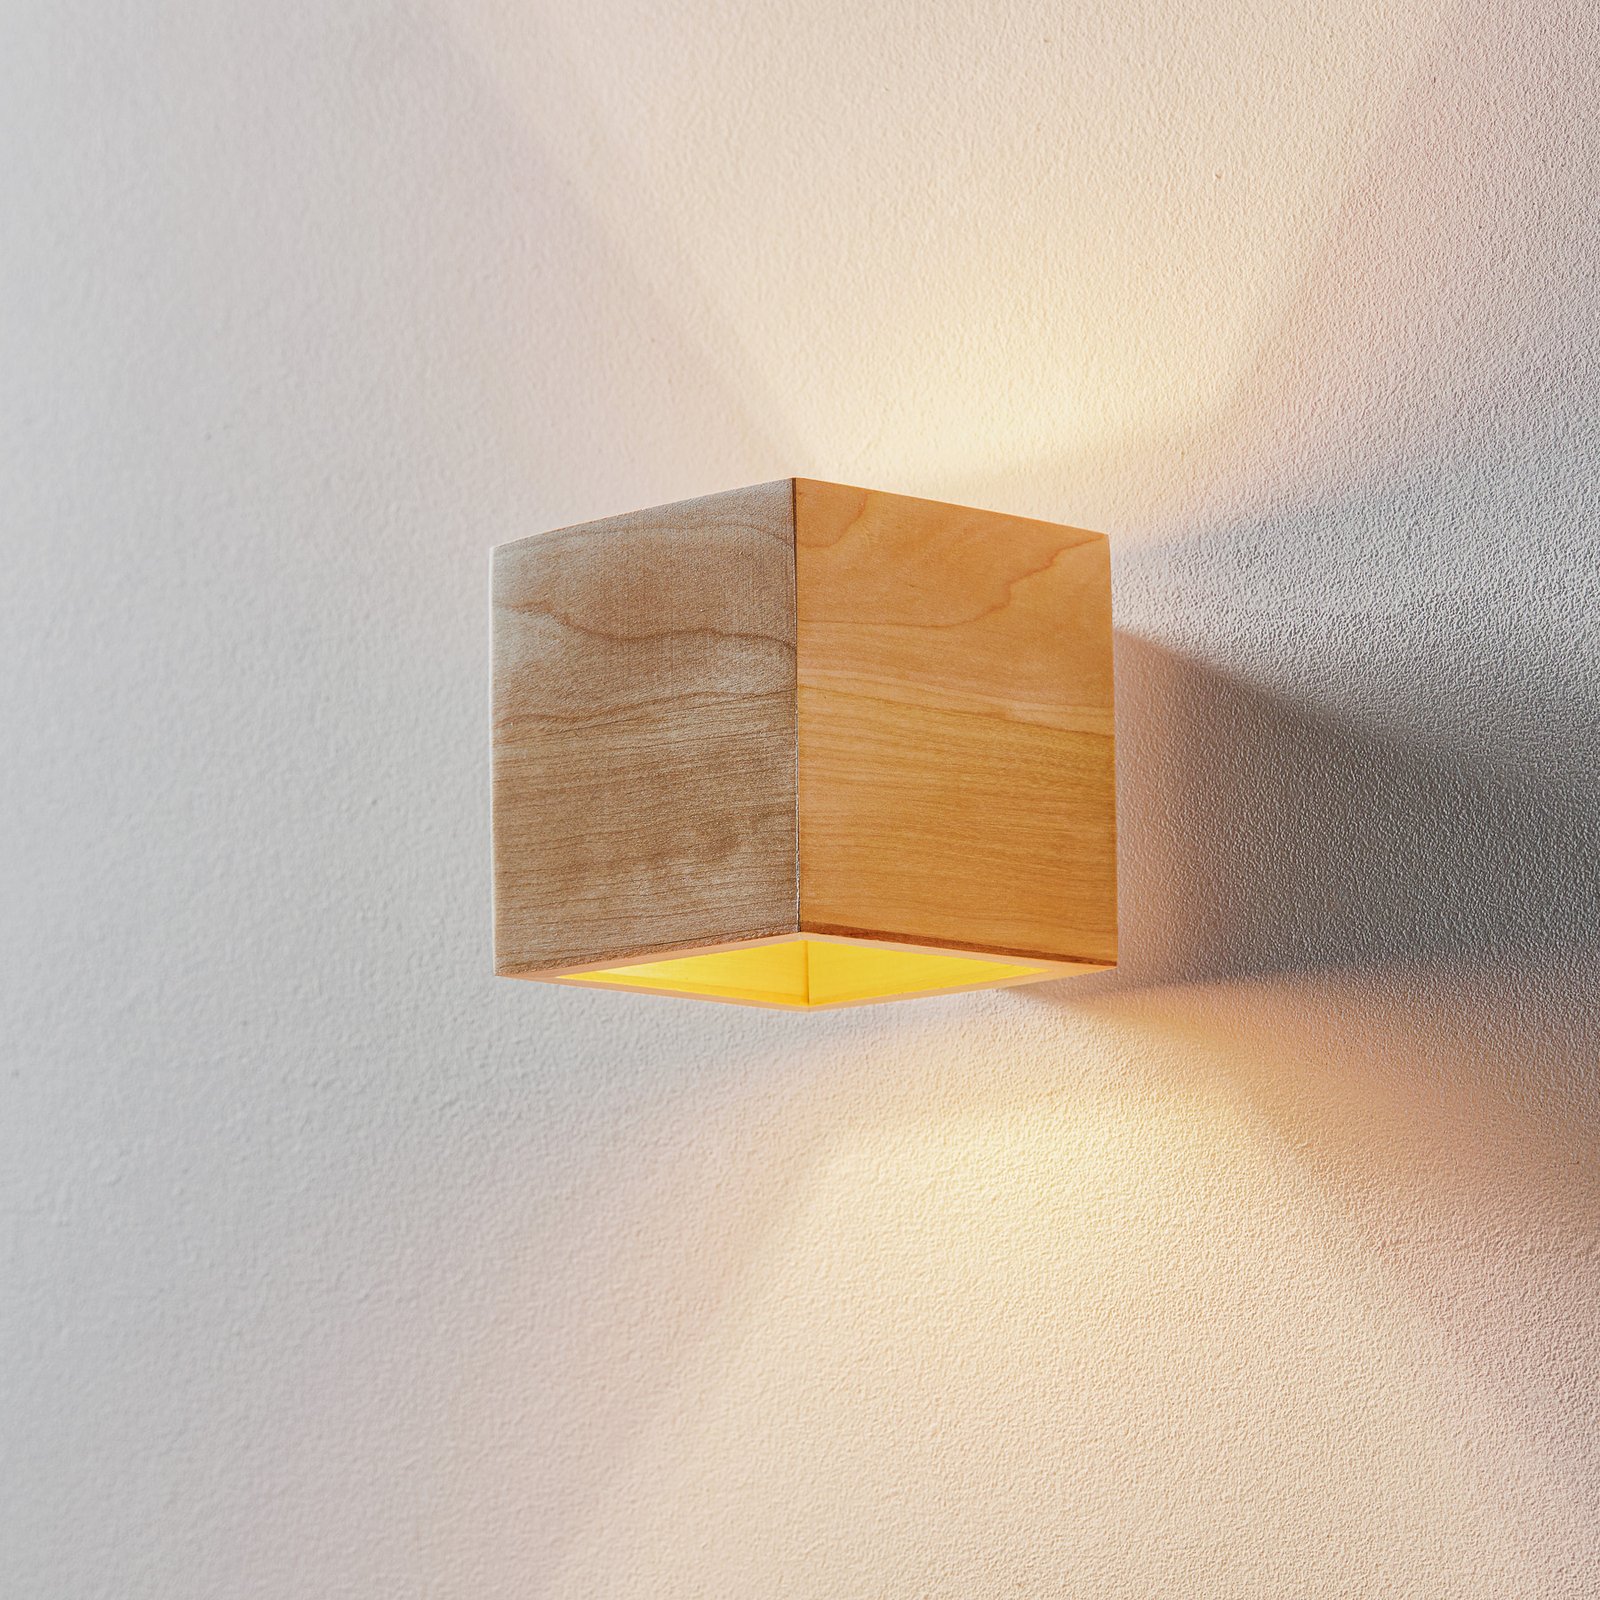 Ara wall light as a wooden cube